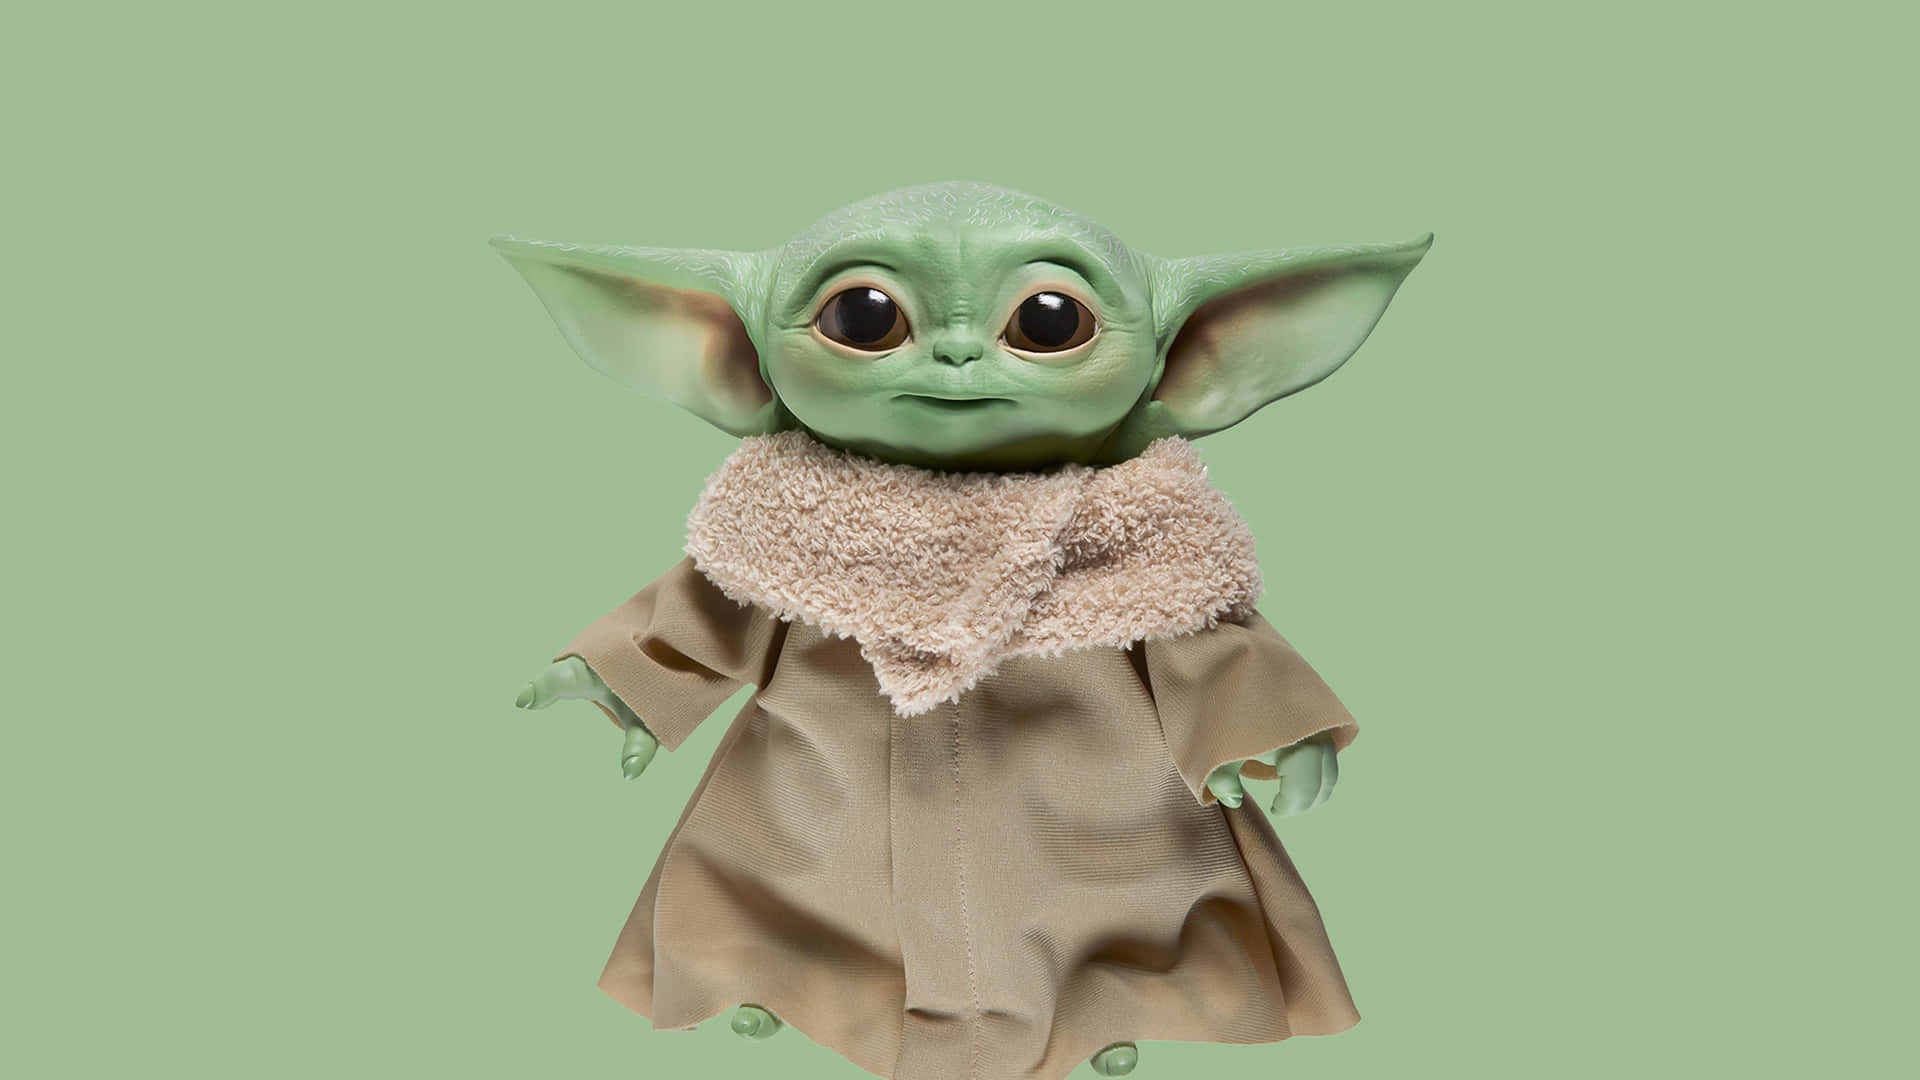 Lindaimagen De Baby Yoda En Color Verde Militar.